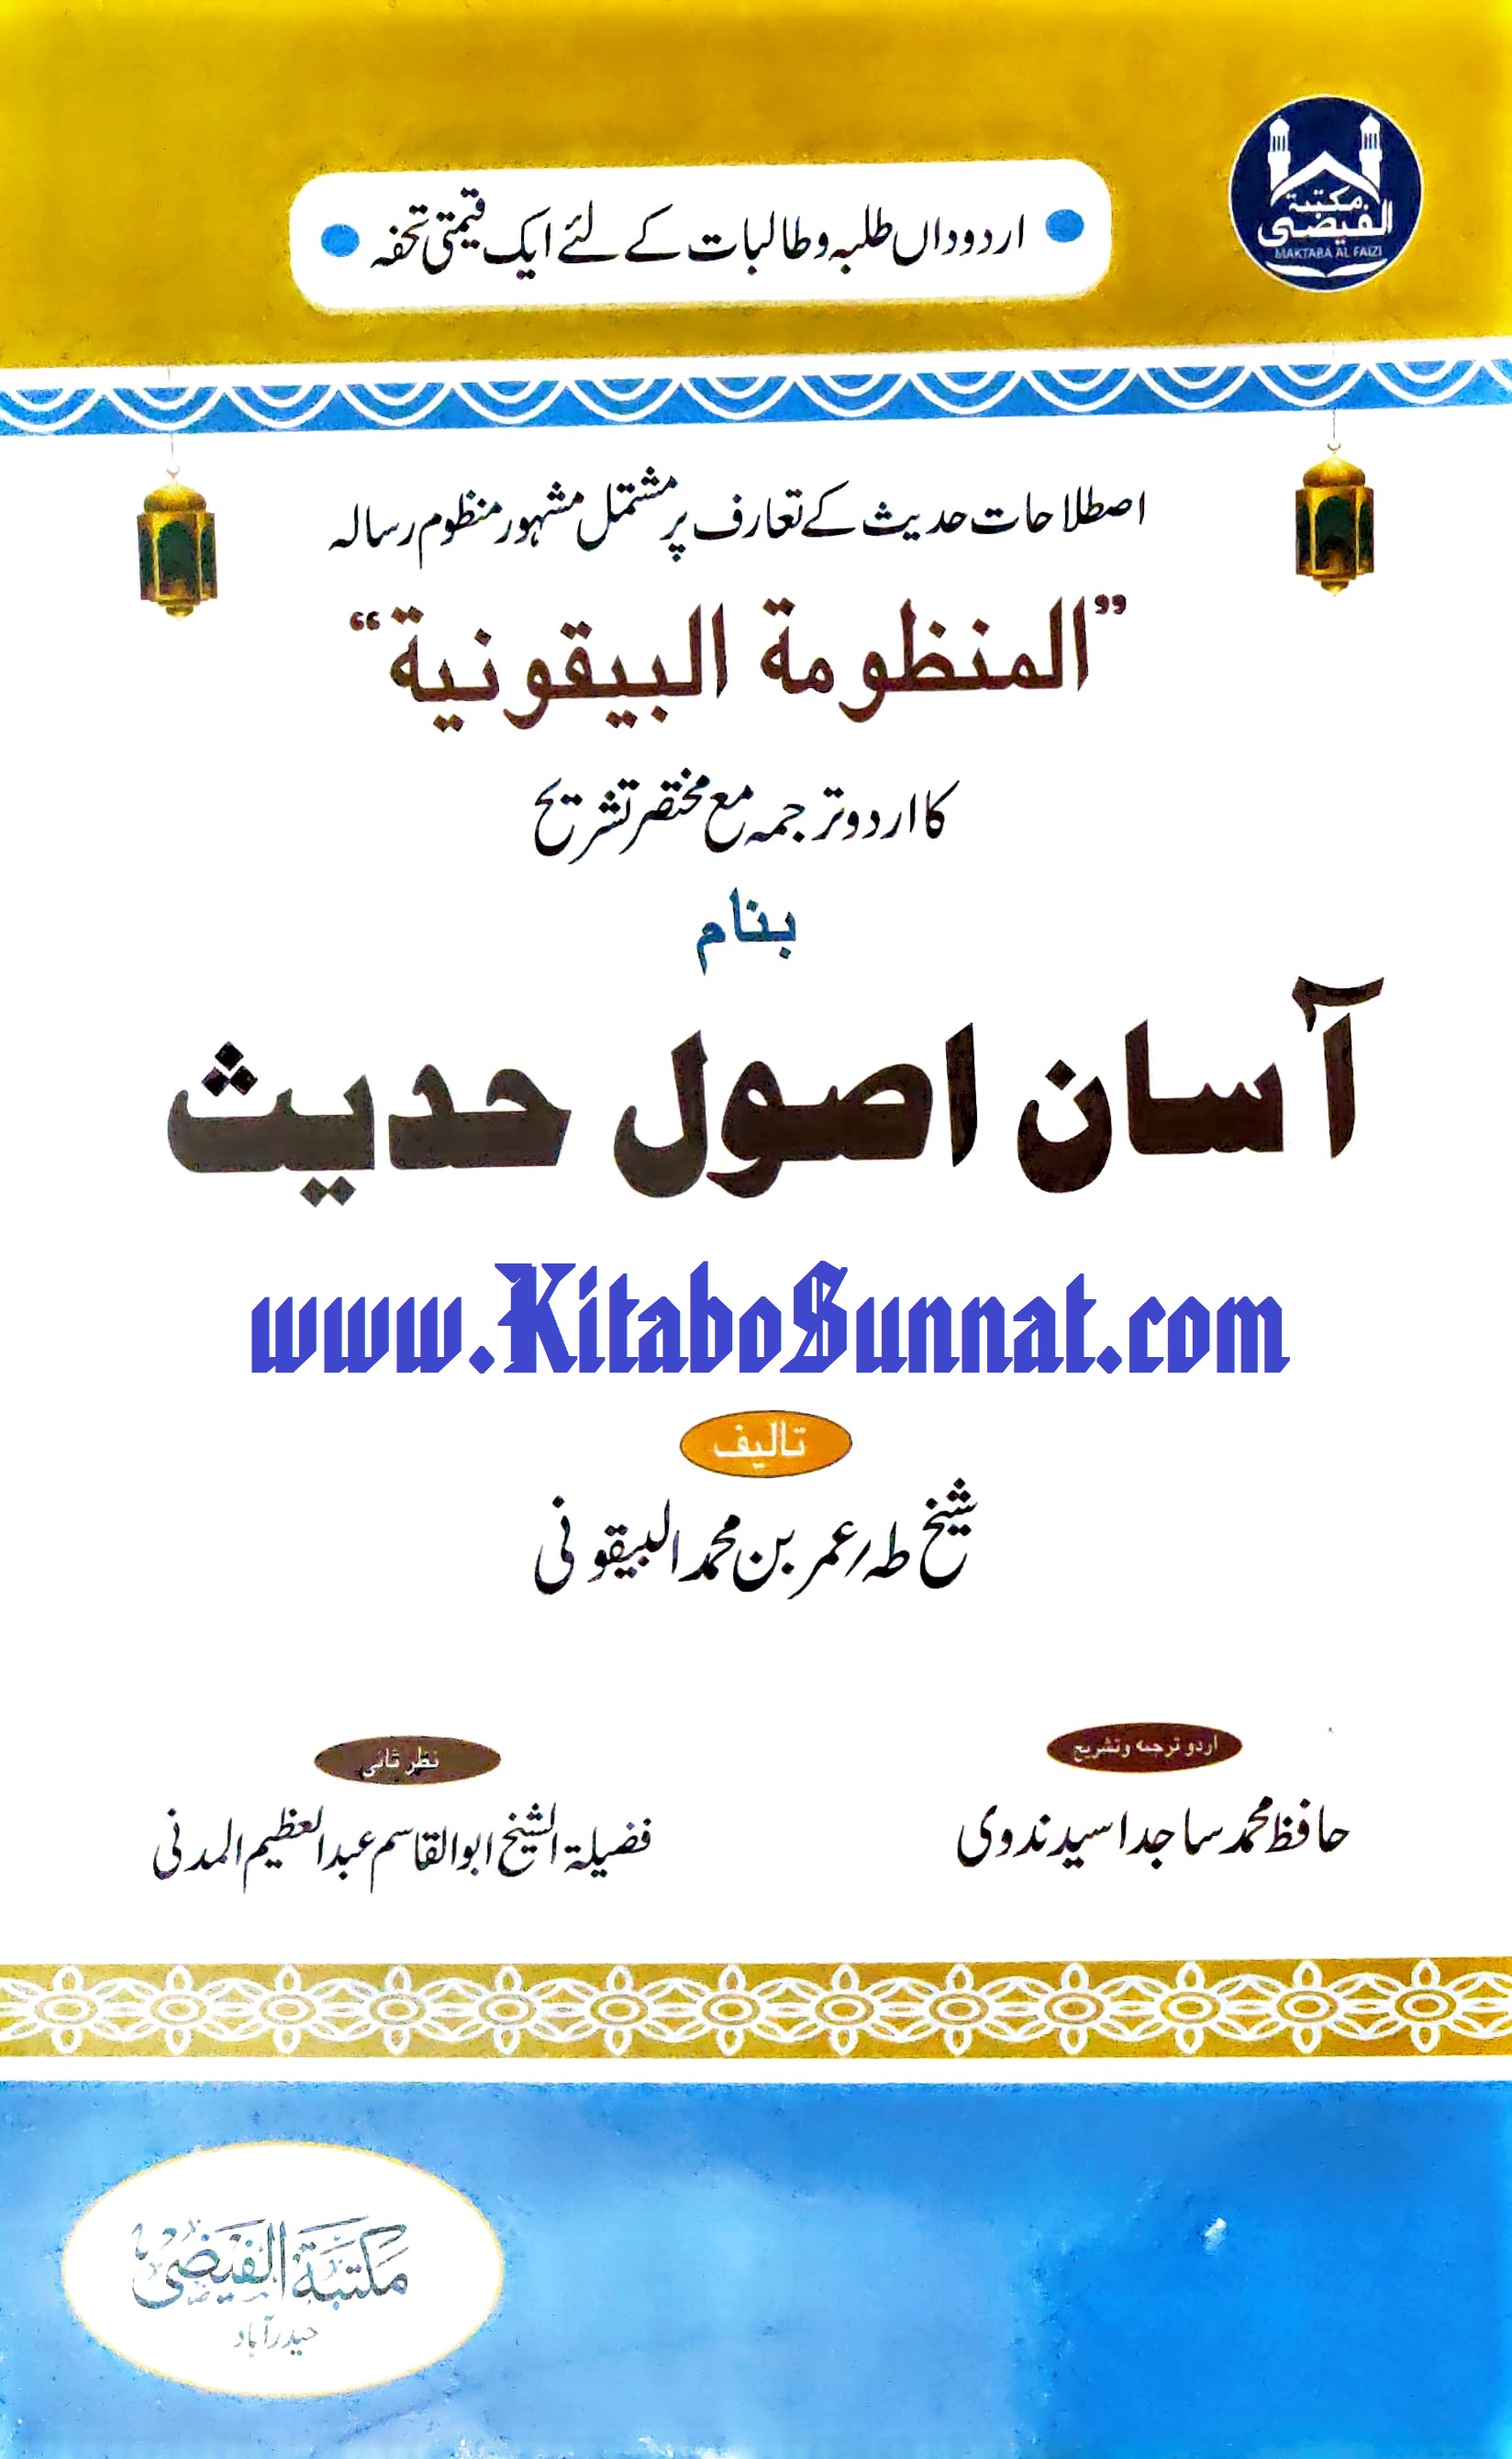 Title --- Aasan-Usool-e-Hadith-Tarjuma-Al-Manzoma.jpg